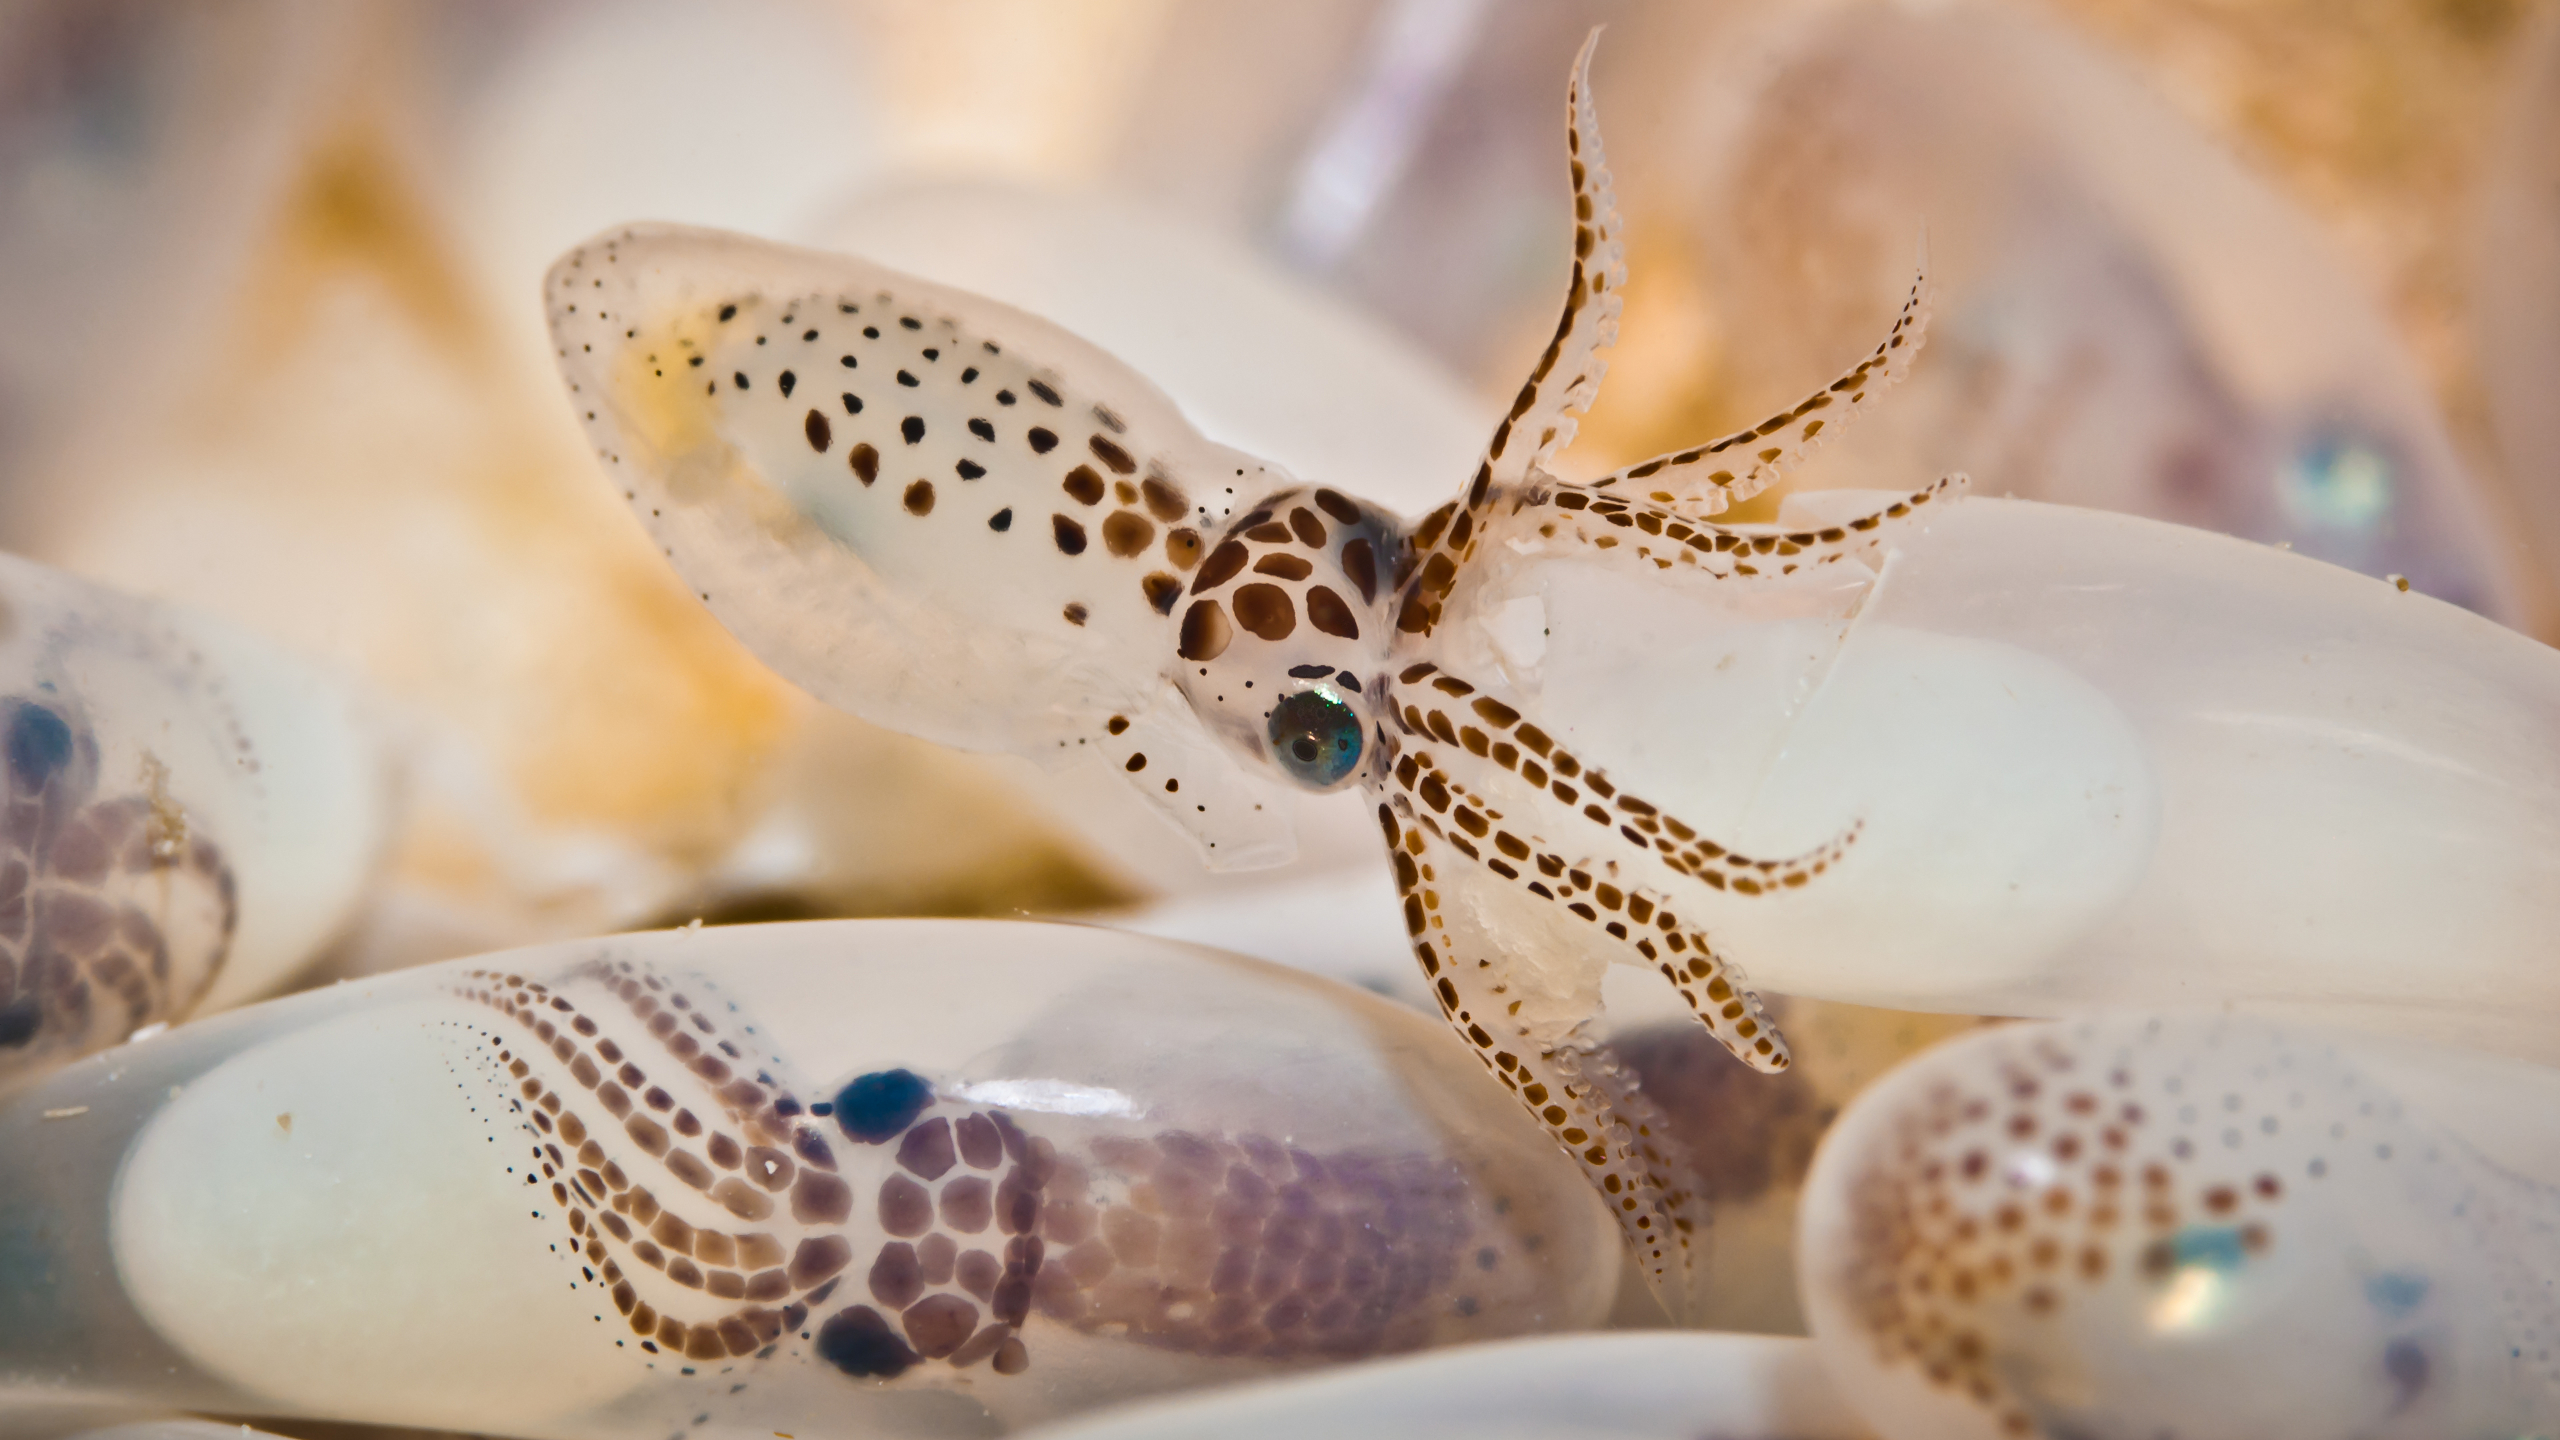 Octopus Eggs Nature Underwater 2560x1440